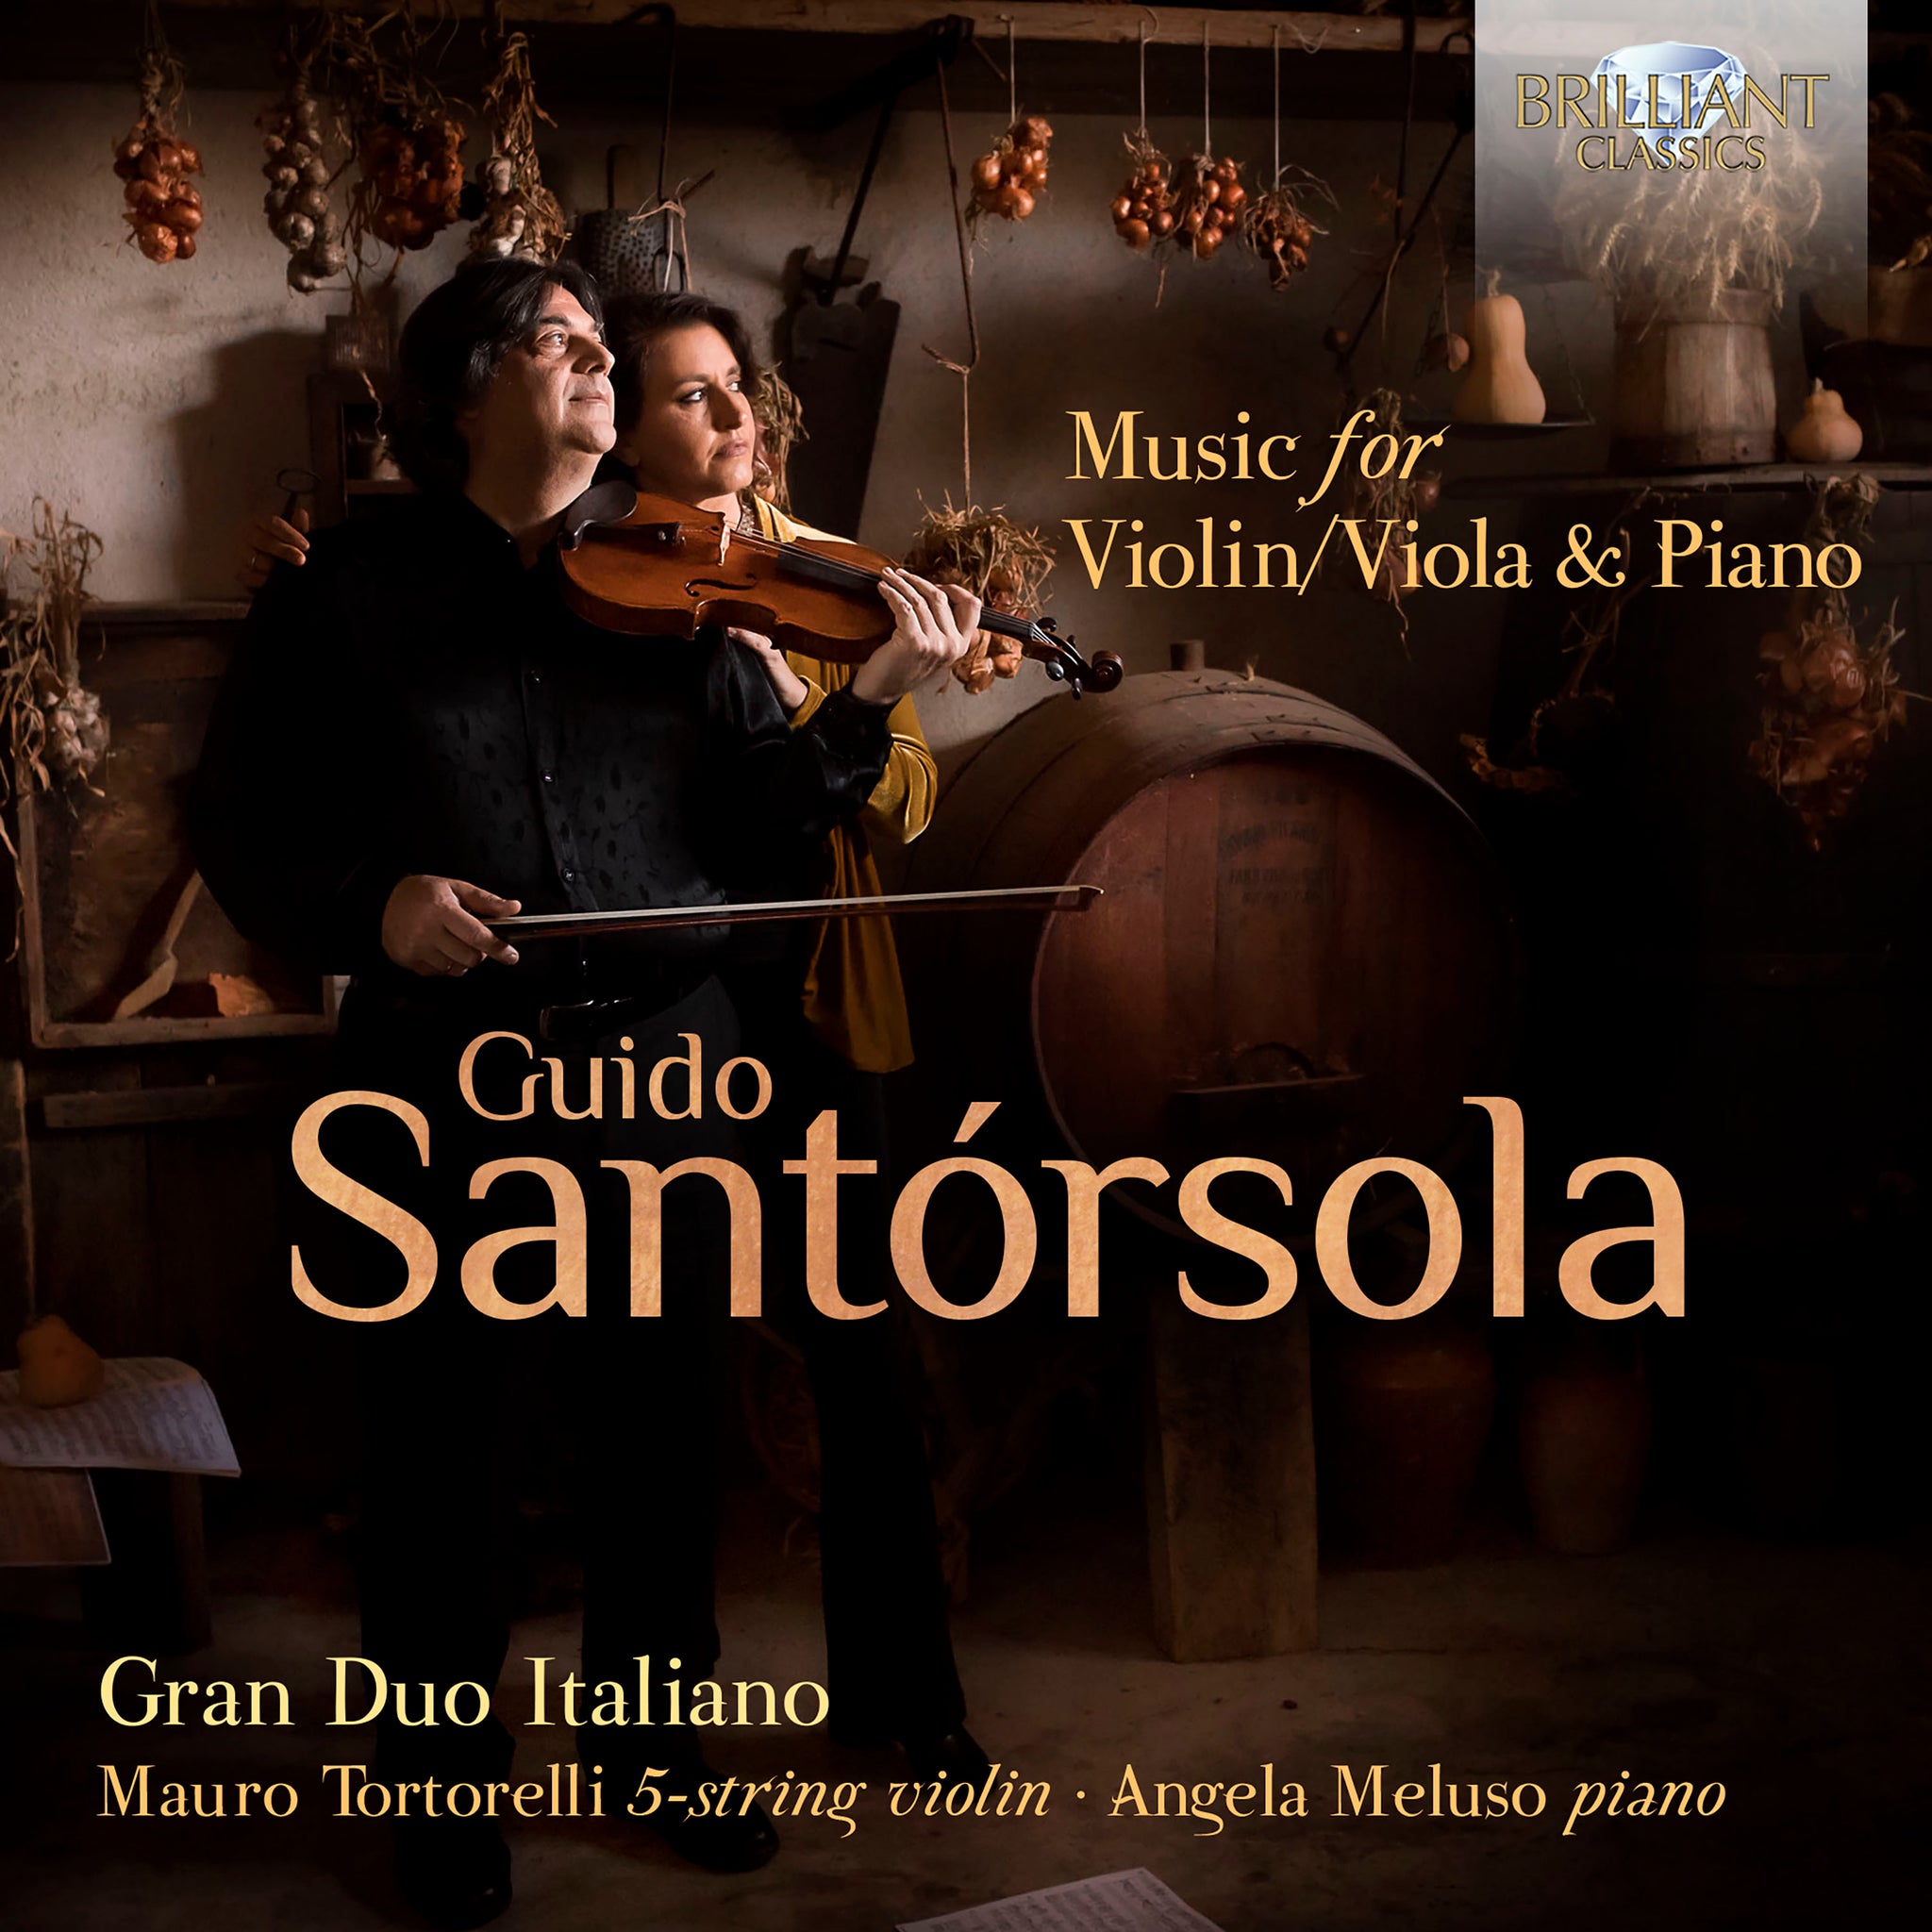 Santorsola: Music for Violin/Viola & Piano / Gran Duo Italiano